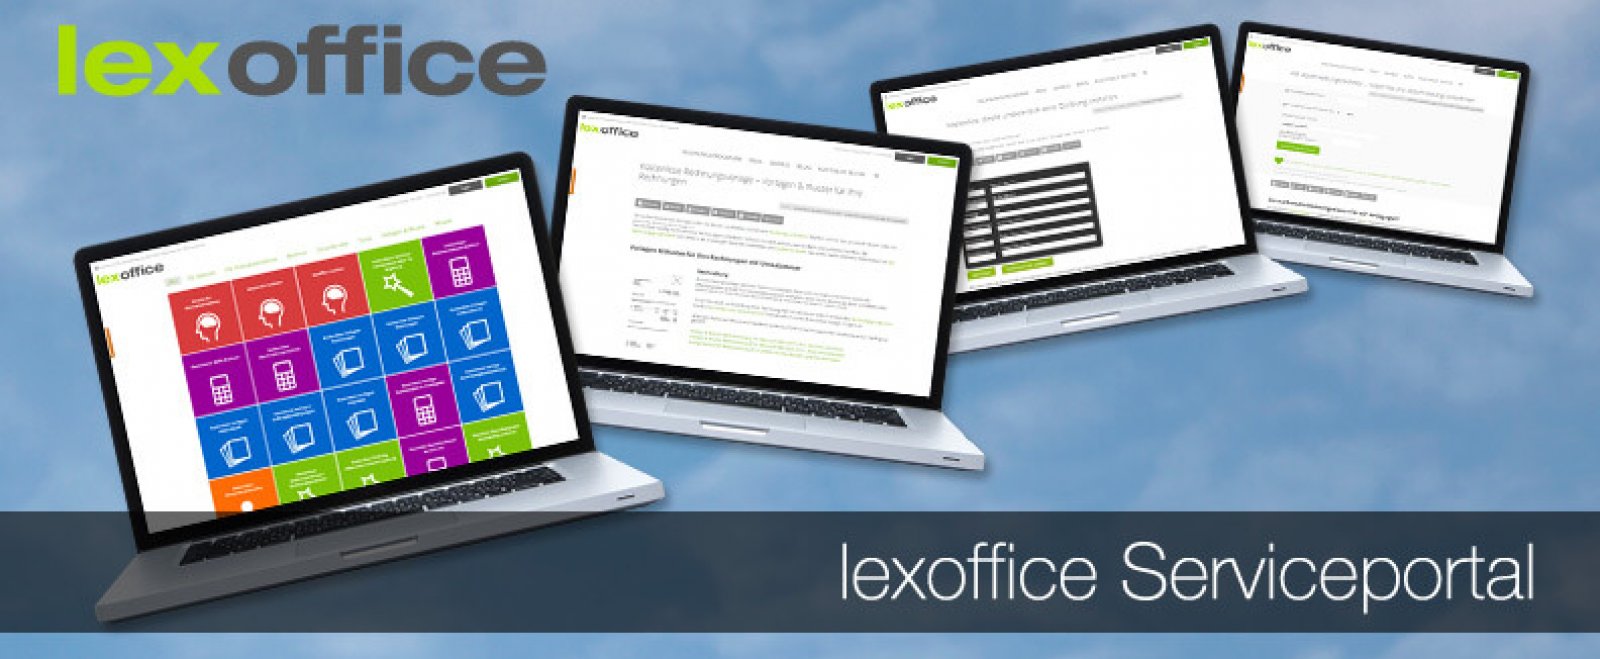 lexoffice: Vom Rechnungsprogramm zur Plattform